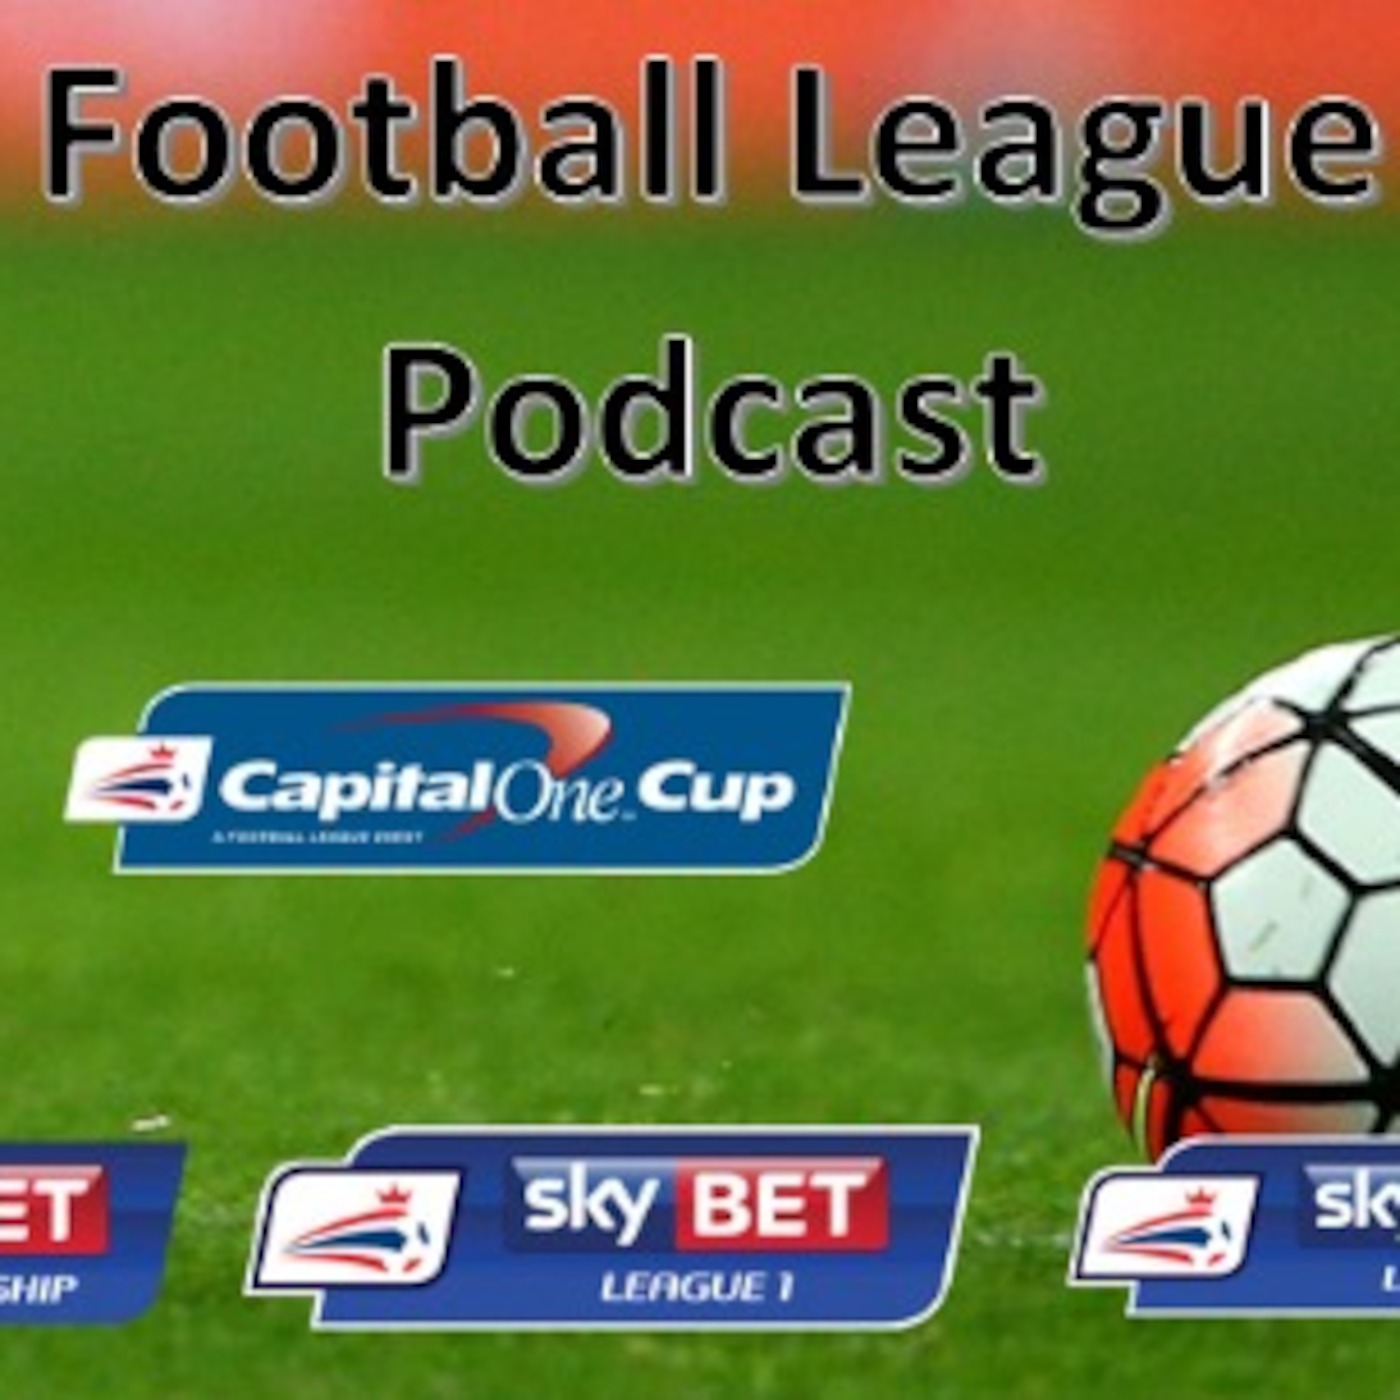 Football League Podcast